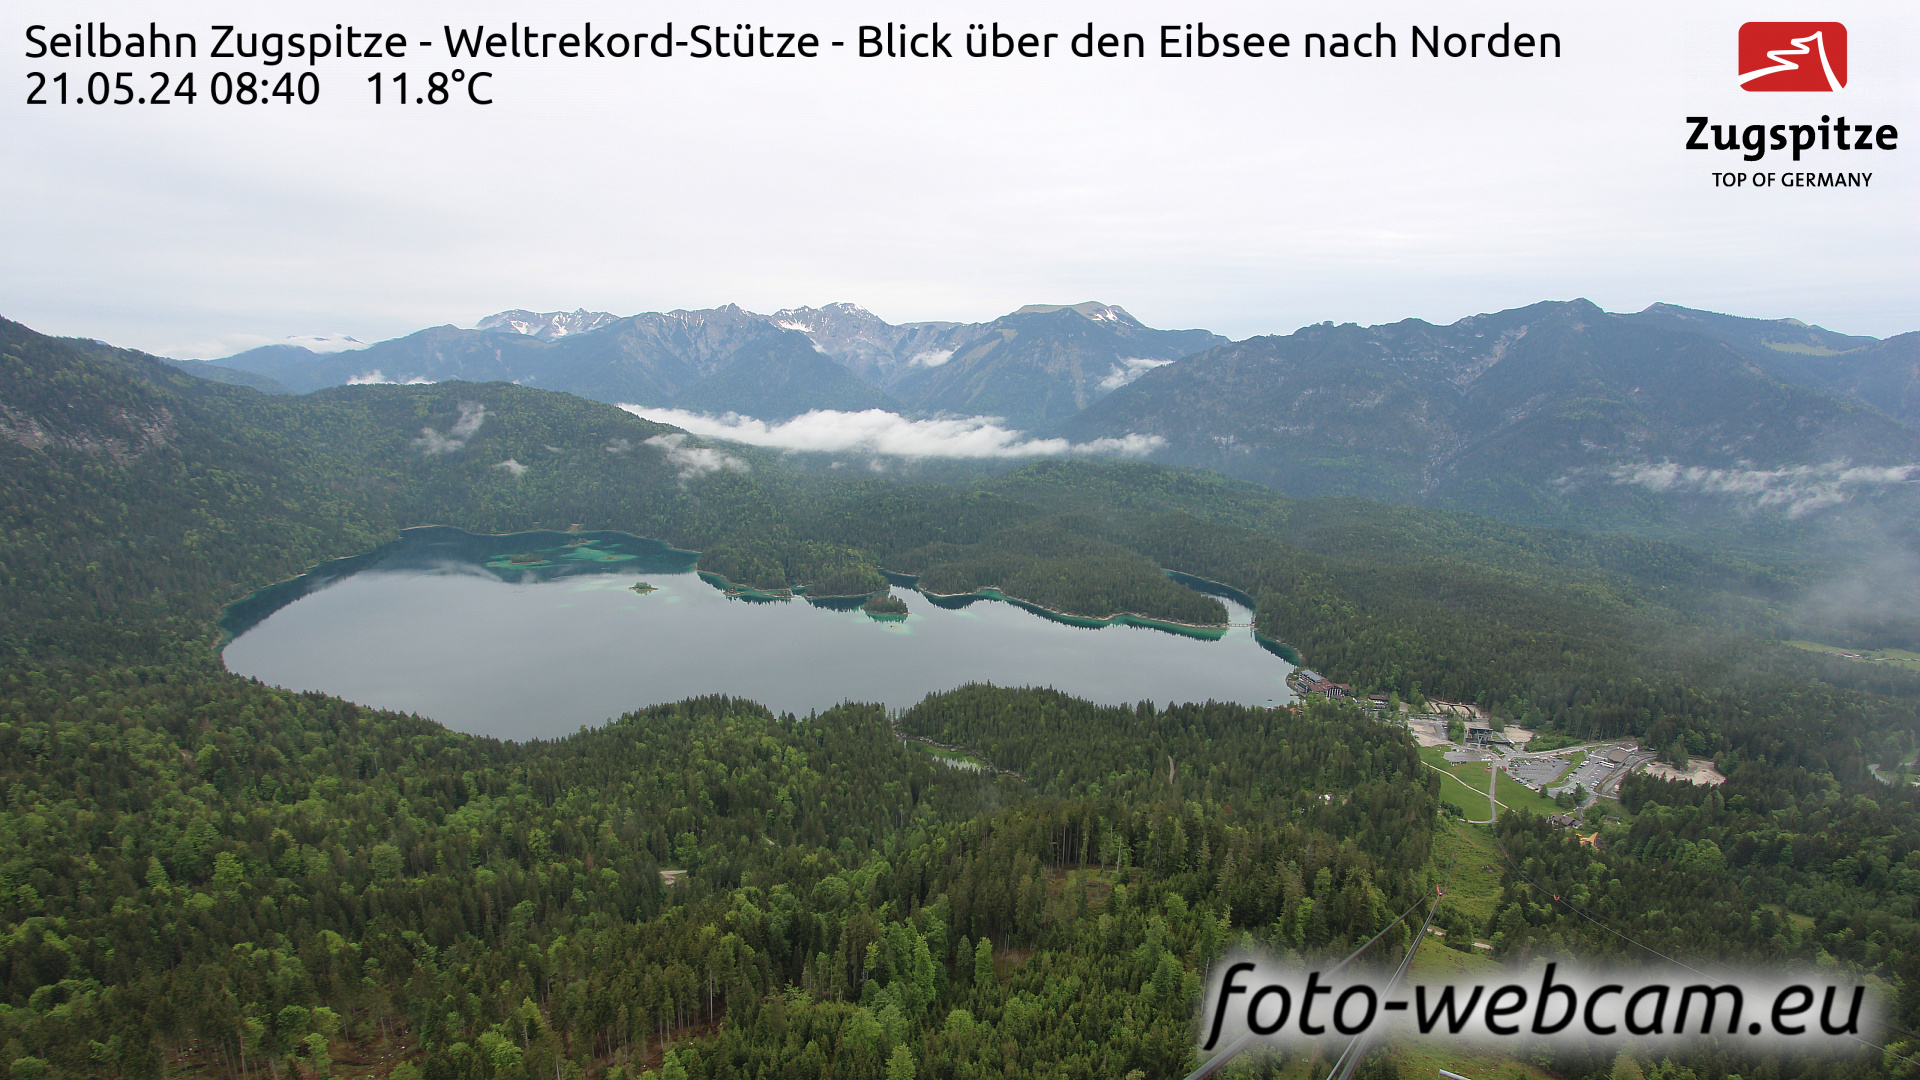 Zugspitze So. 08:49